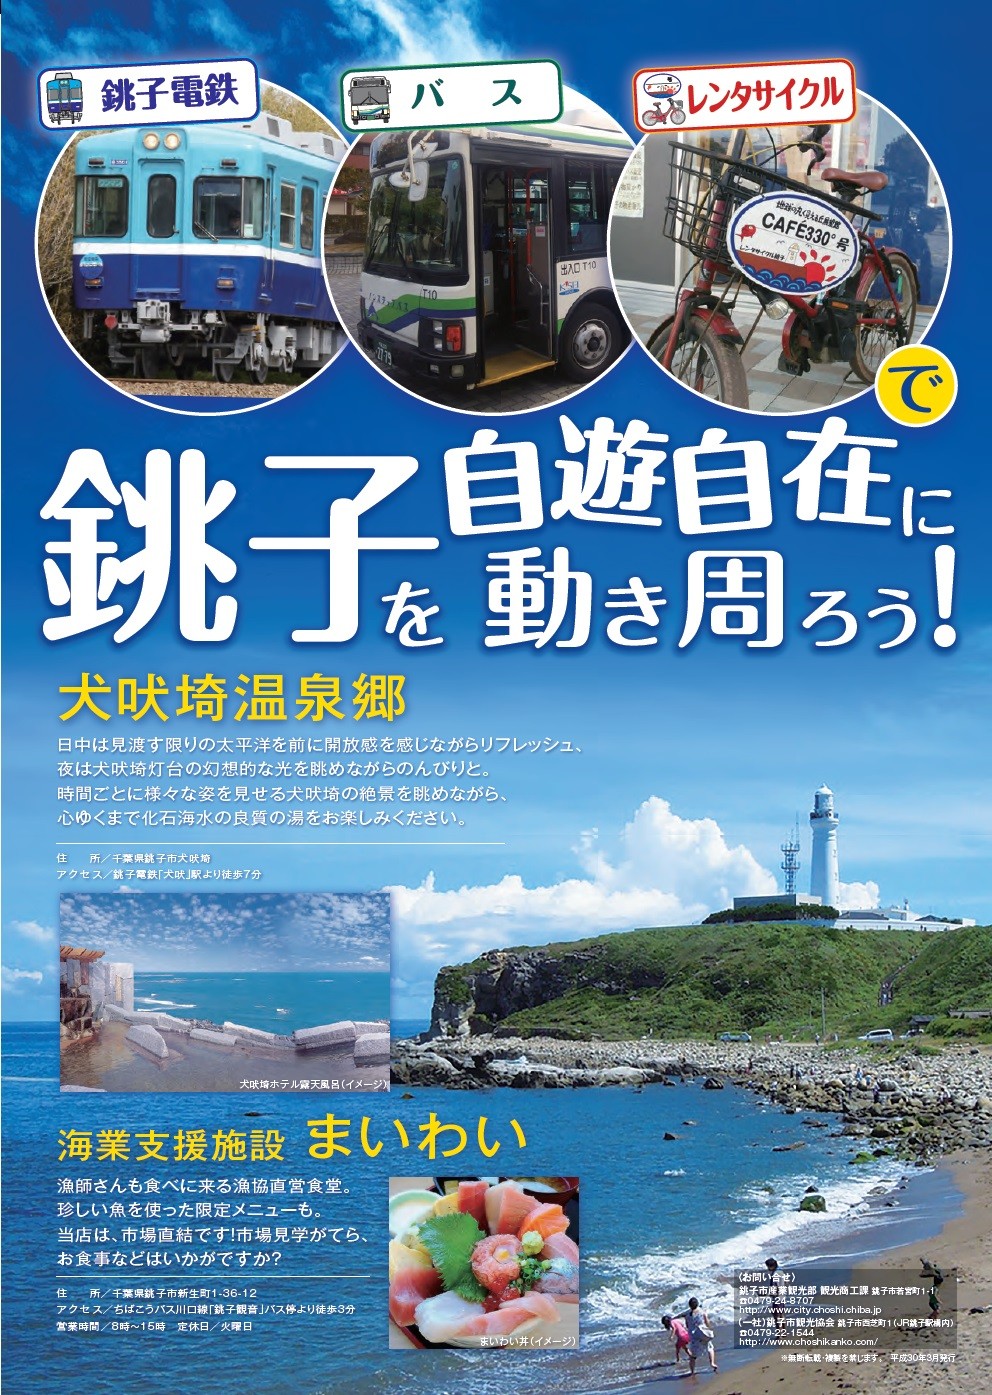 銚子の歩き方 銚電やバスで行く 銚子観光がまるわかり Guide Book 觀光指南手冊 銚子電気鉄道株式会社